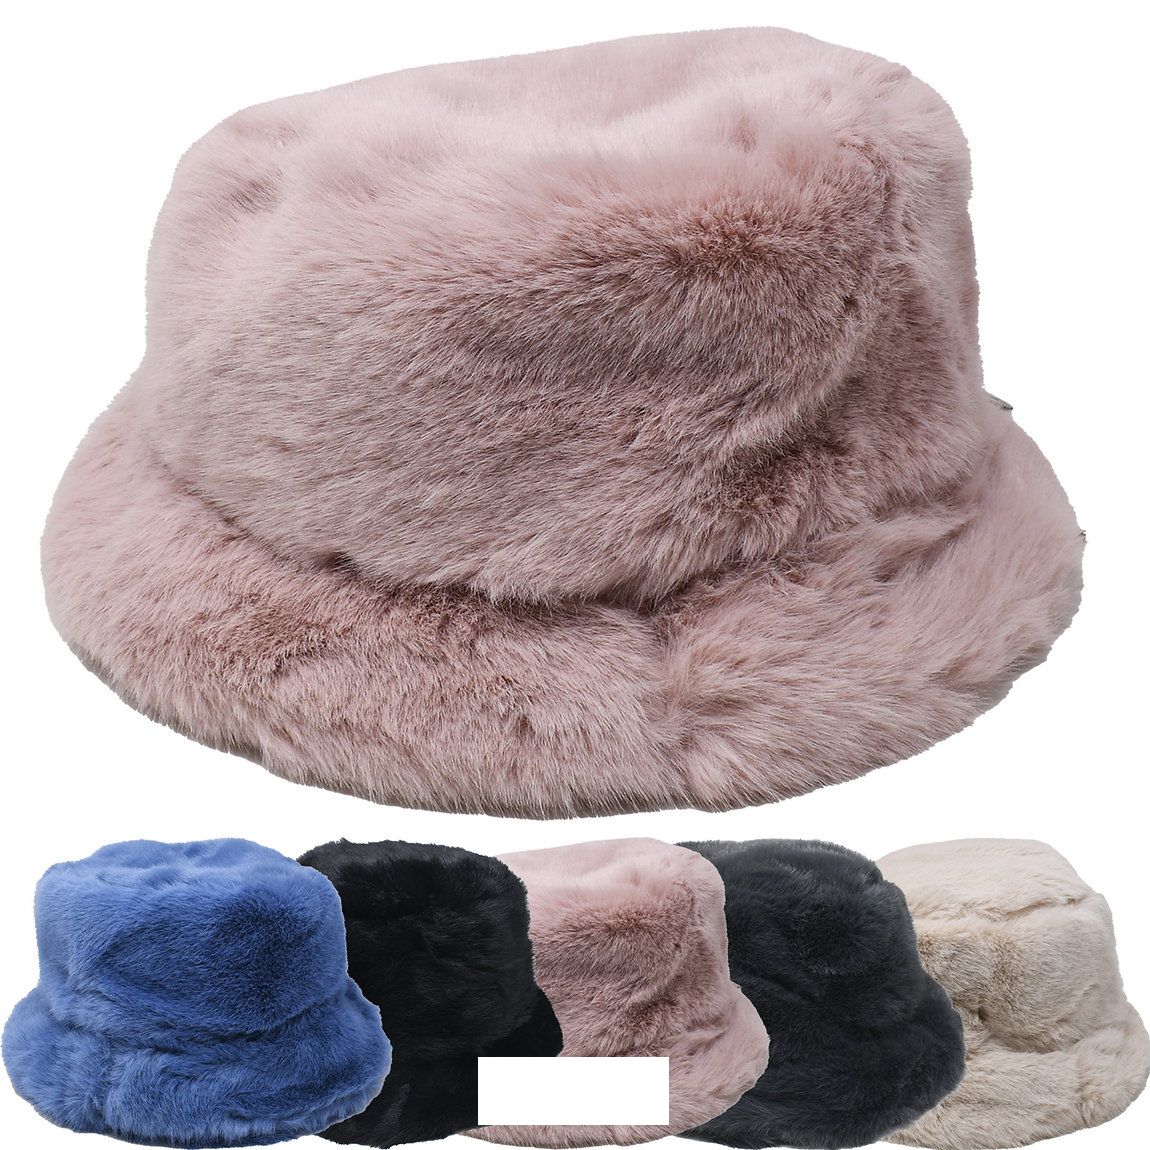 12 Pieces of Women's Winter Faux Fur Bucket Hat Style